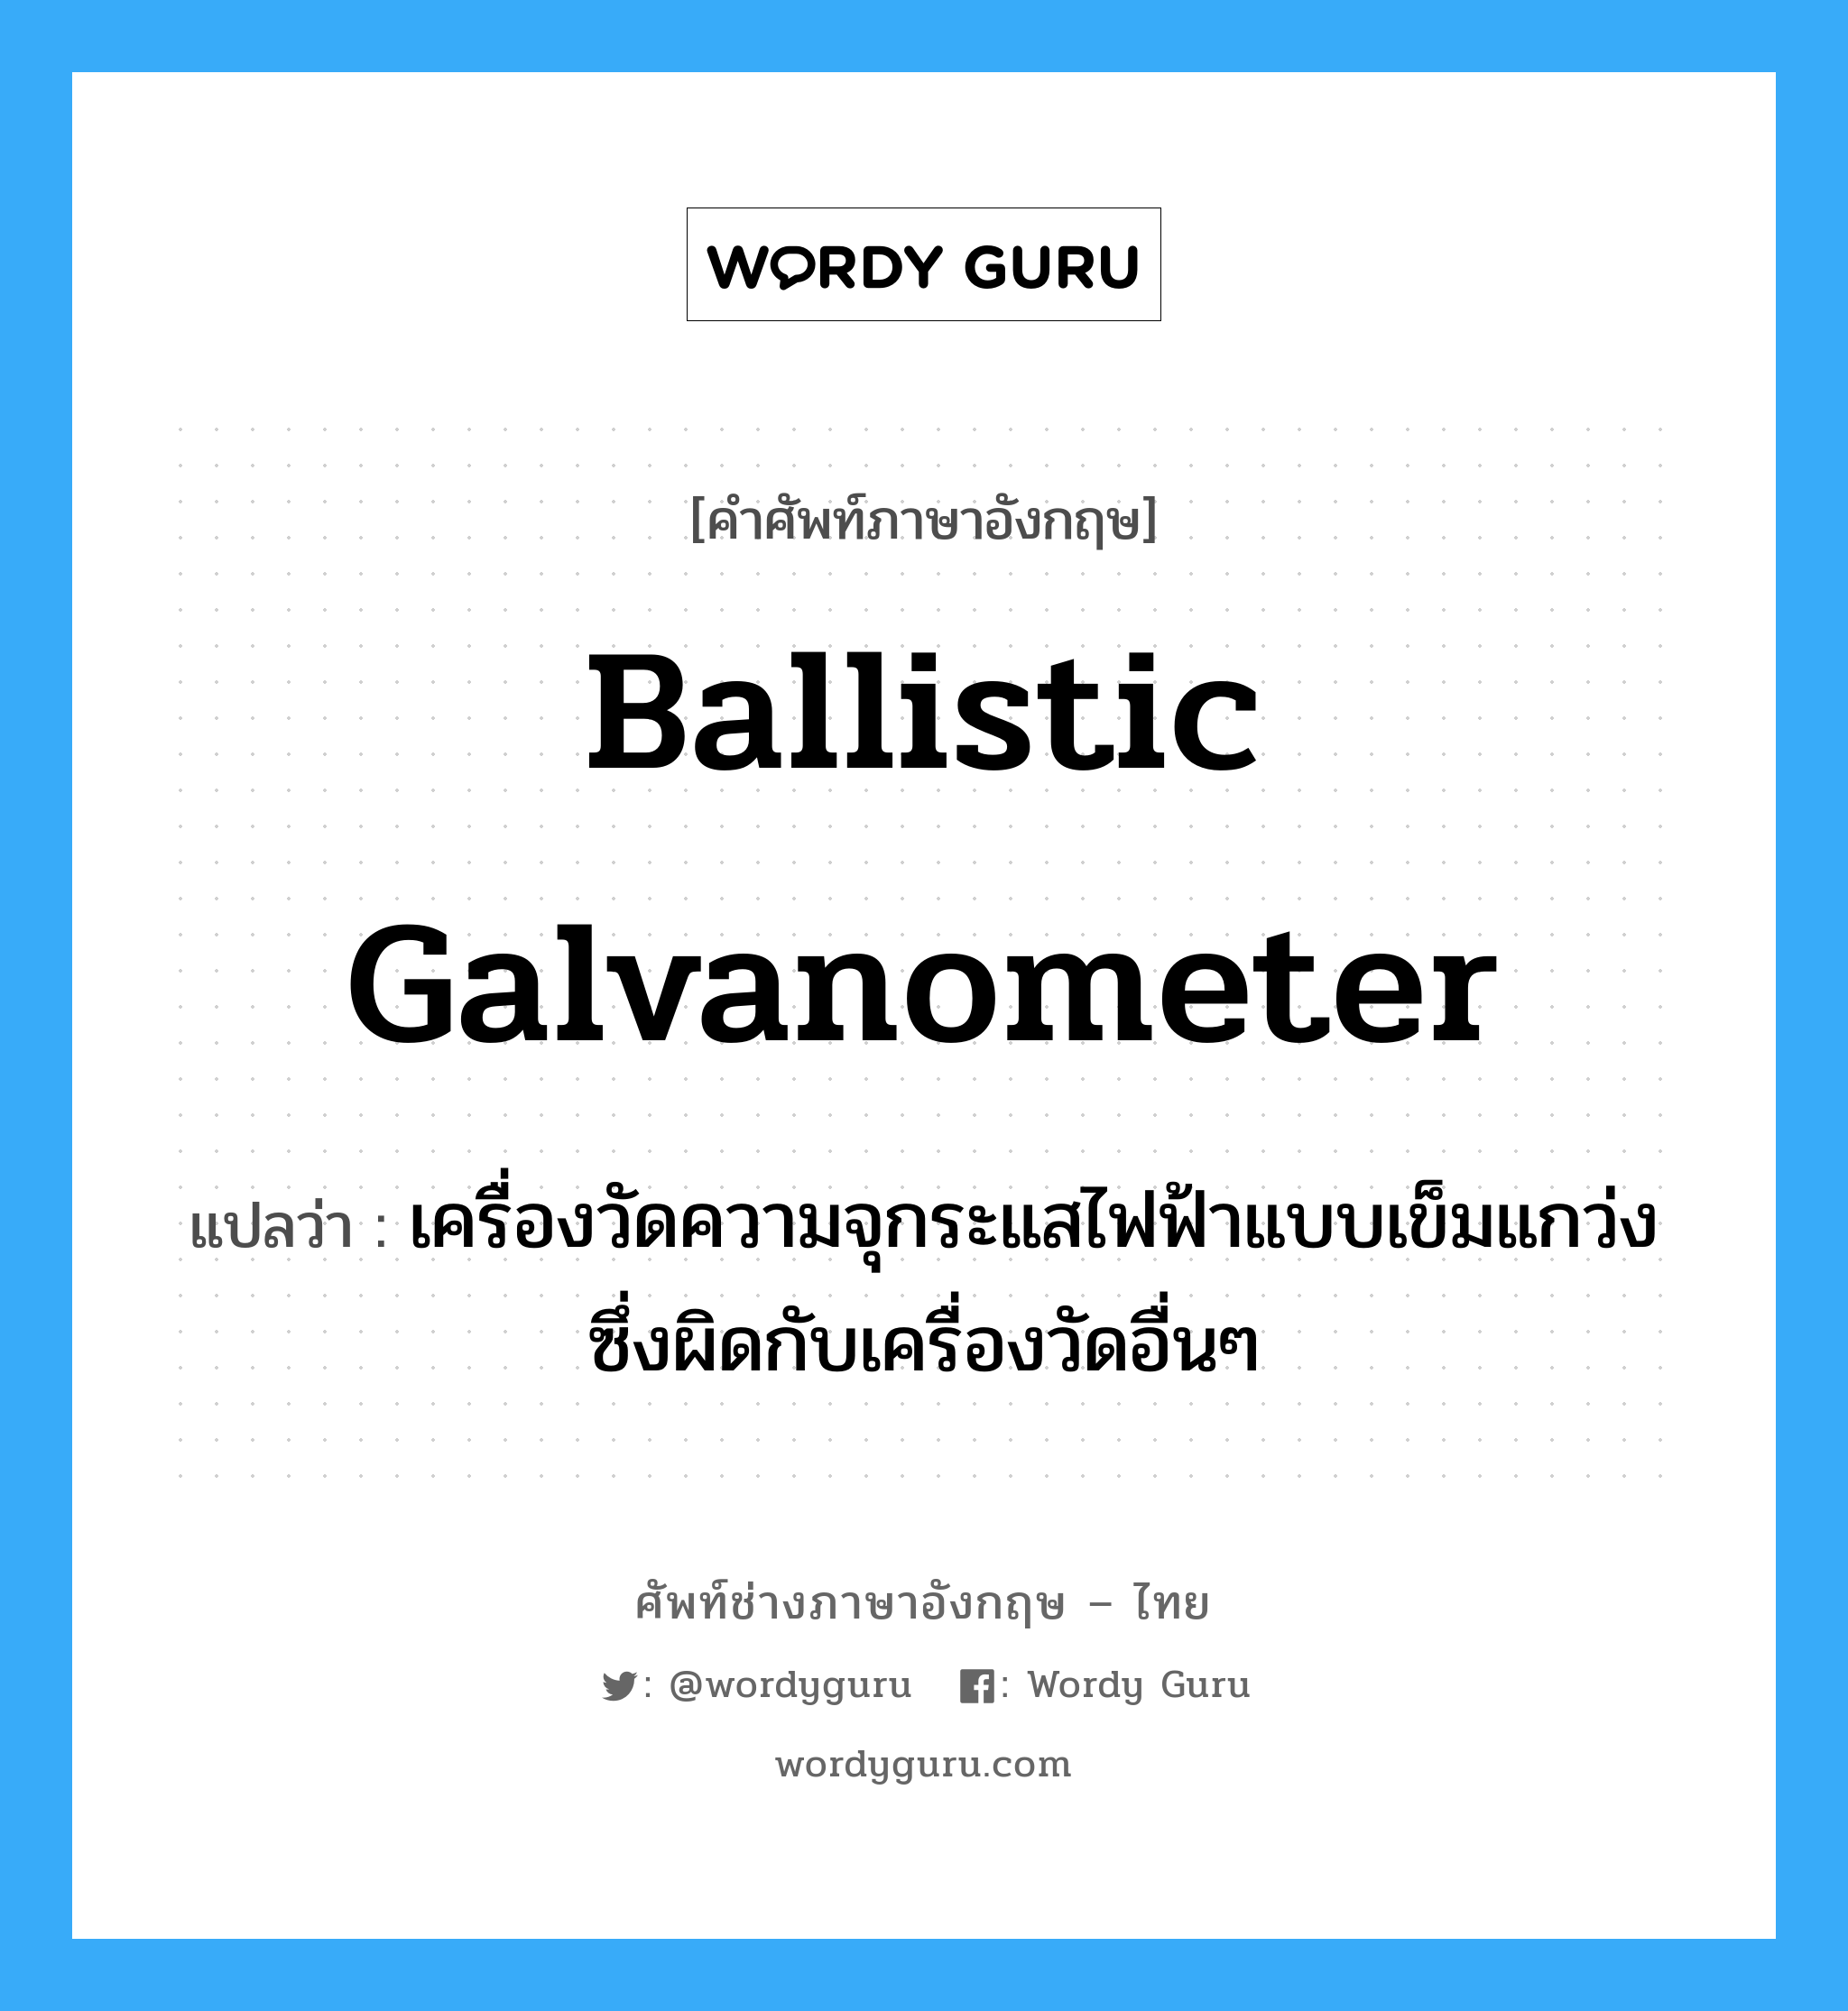 ballistic galvanometer แปลว่า?, คำศัพท์ช่างภาษาอังกฤษ - ไทย ballistic galvanometer คำศัพท์ภาษาอังกฤษ ballistic galvanometer แปลว่า เครื่องวัดความจุกระแสไฟฟ้าแบบเข็มแกว่ง ซึ่งผิดกับเครื่องวัดอื่นๆ